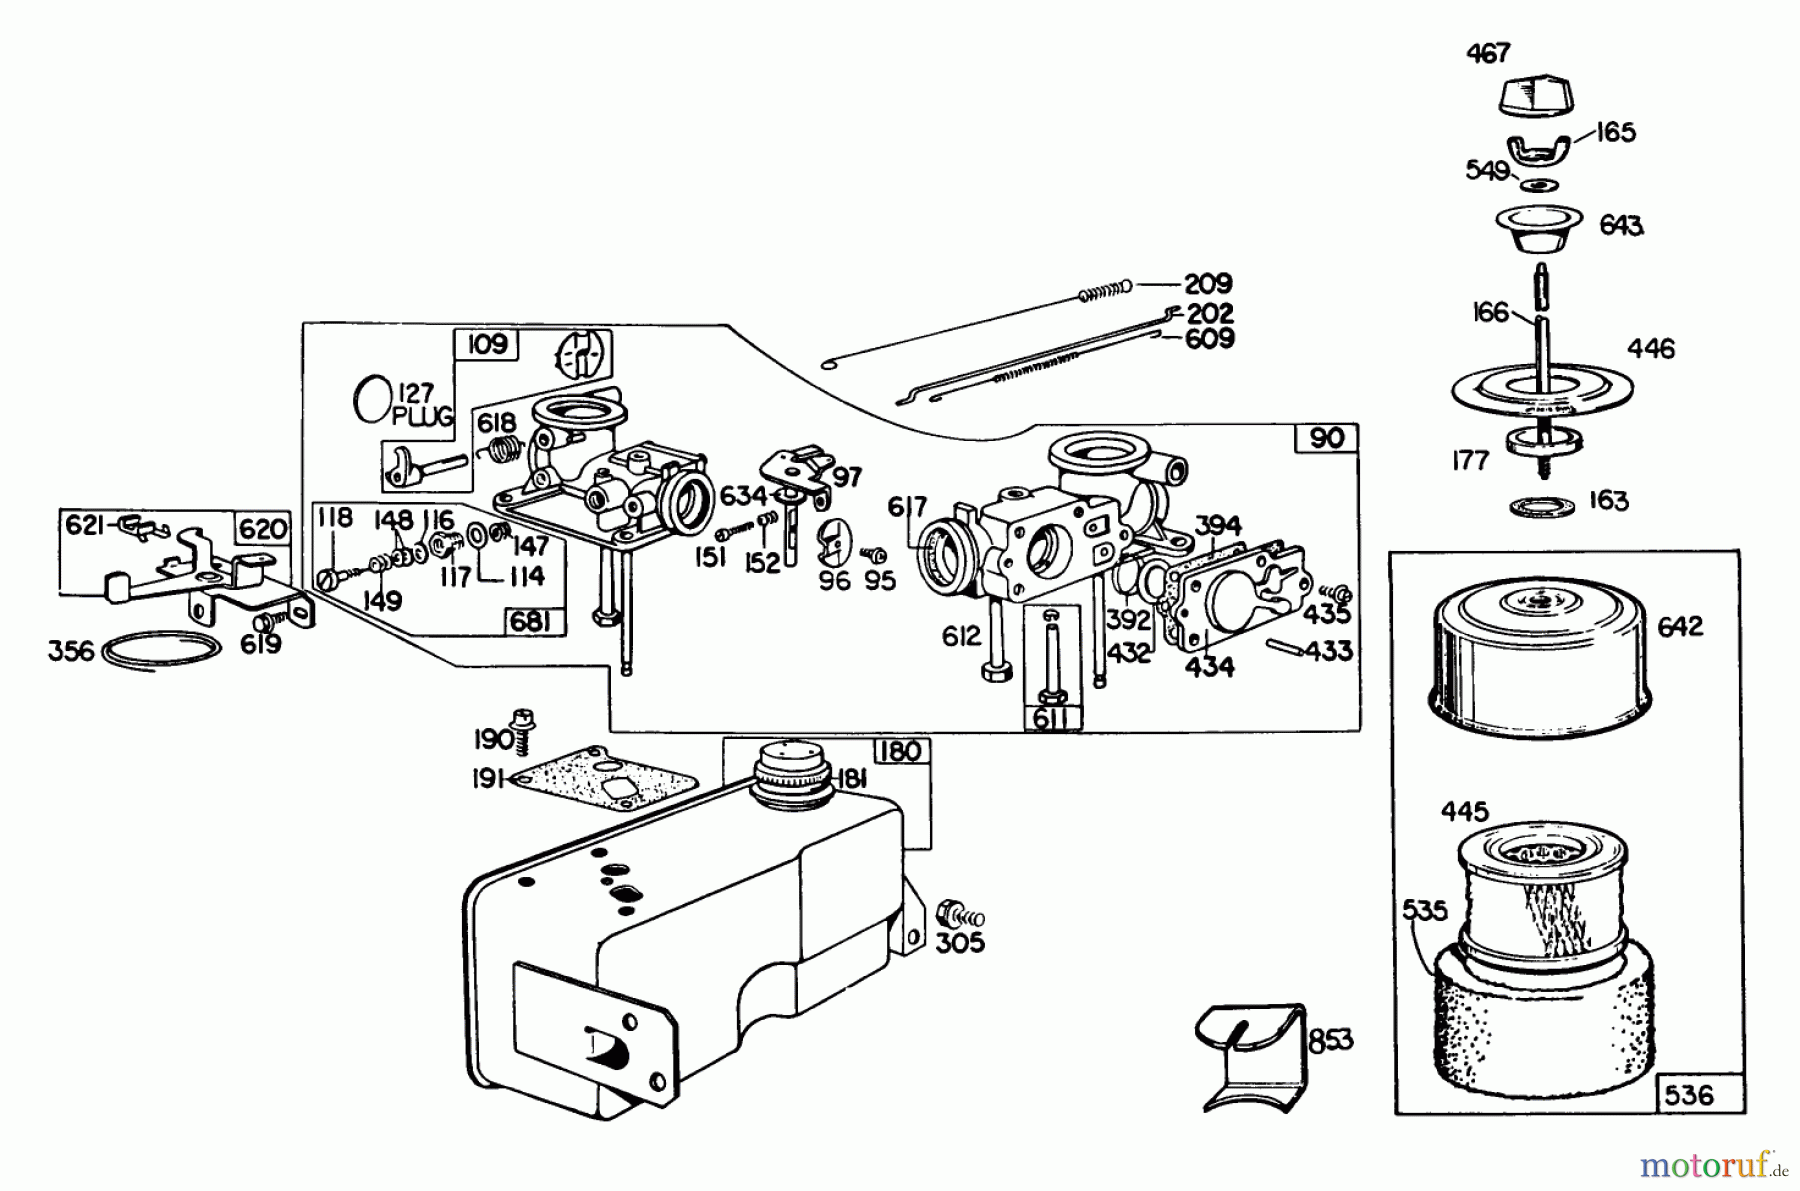  Toro Neu Mowers, Walk-Behind Seite 2 23022 - Toro Lawnmower, 1981 (1000001-1999999) ENGINE BRIGGS & STRATTON MODEL 130902-0543-01 #1